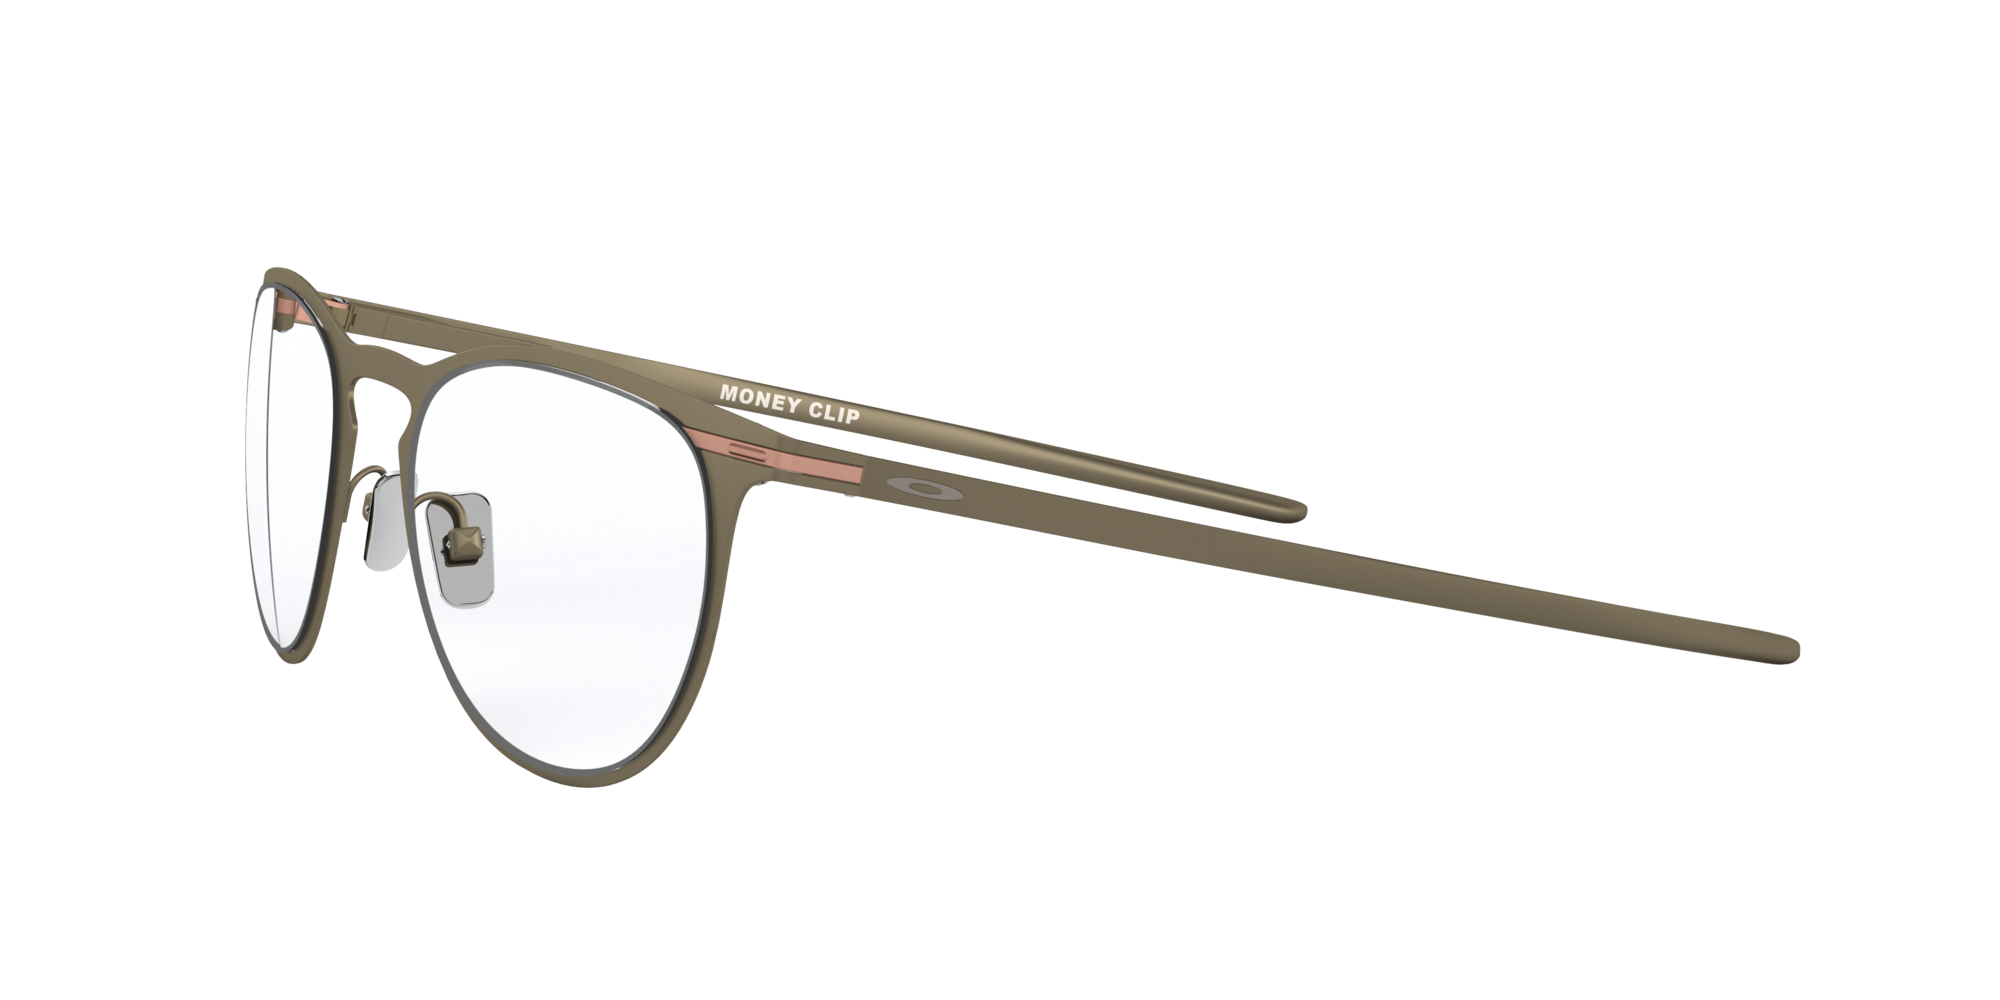 New Vogue VO3267 Dark Copper Color Glasses Clip On Sunglasses 47-20-140 |  eBay